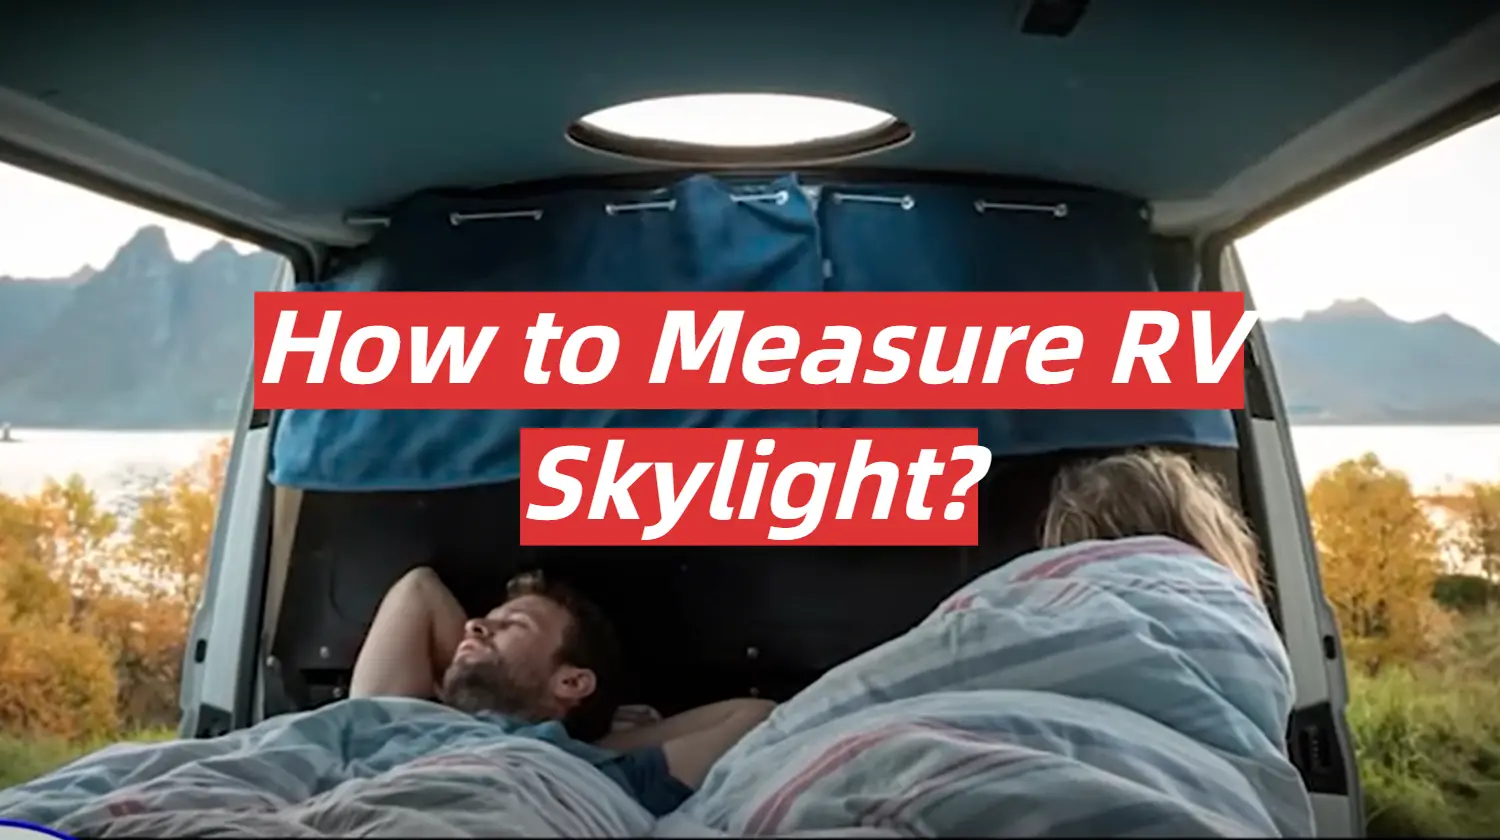 How to Measure RV Skylight?